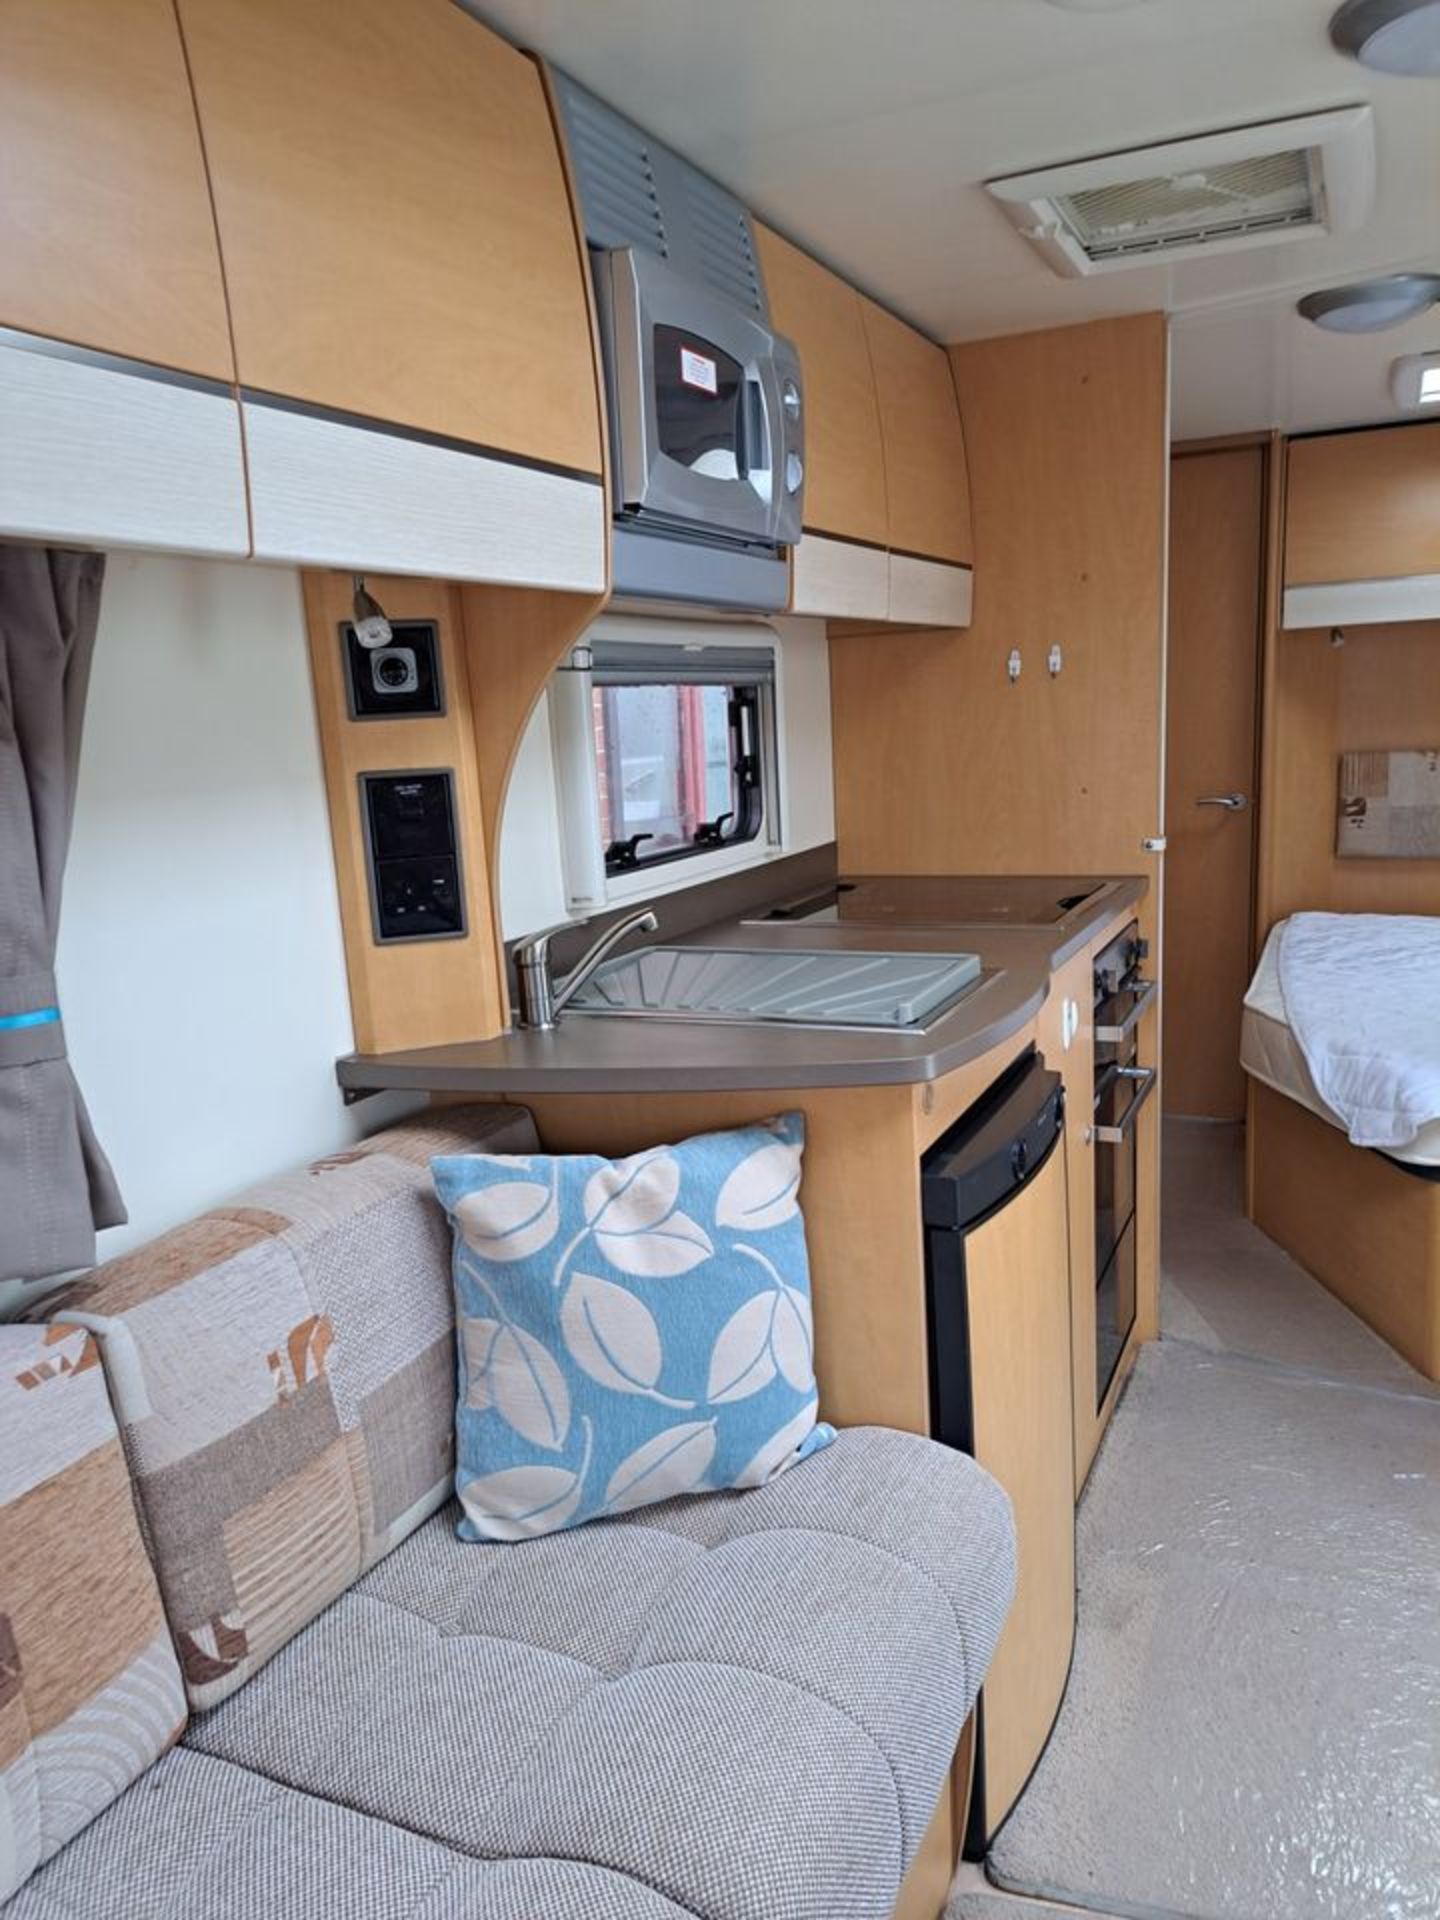 2010 Bailey Pegasus Olympus 534 Caravan in Excellent Condition - 4 Berth *NO VAT* - Image 9 of 18